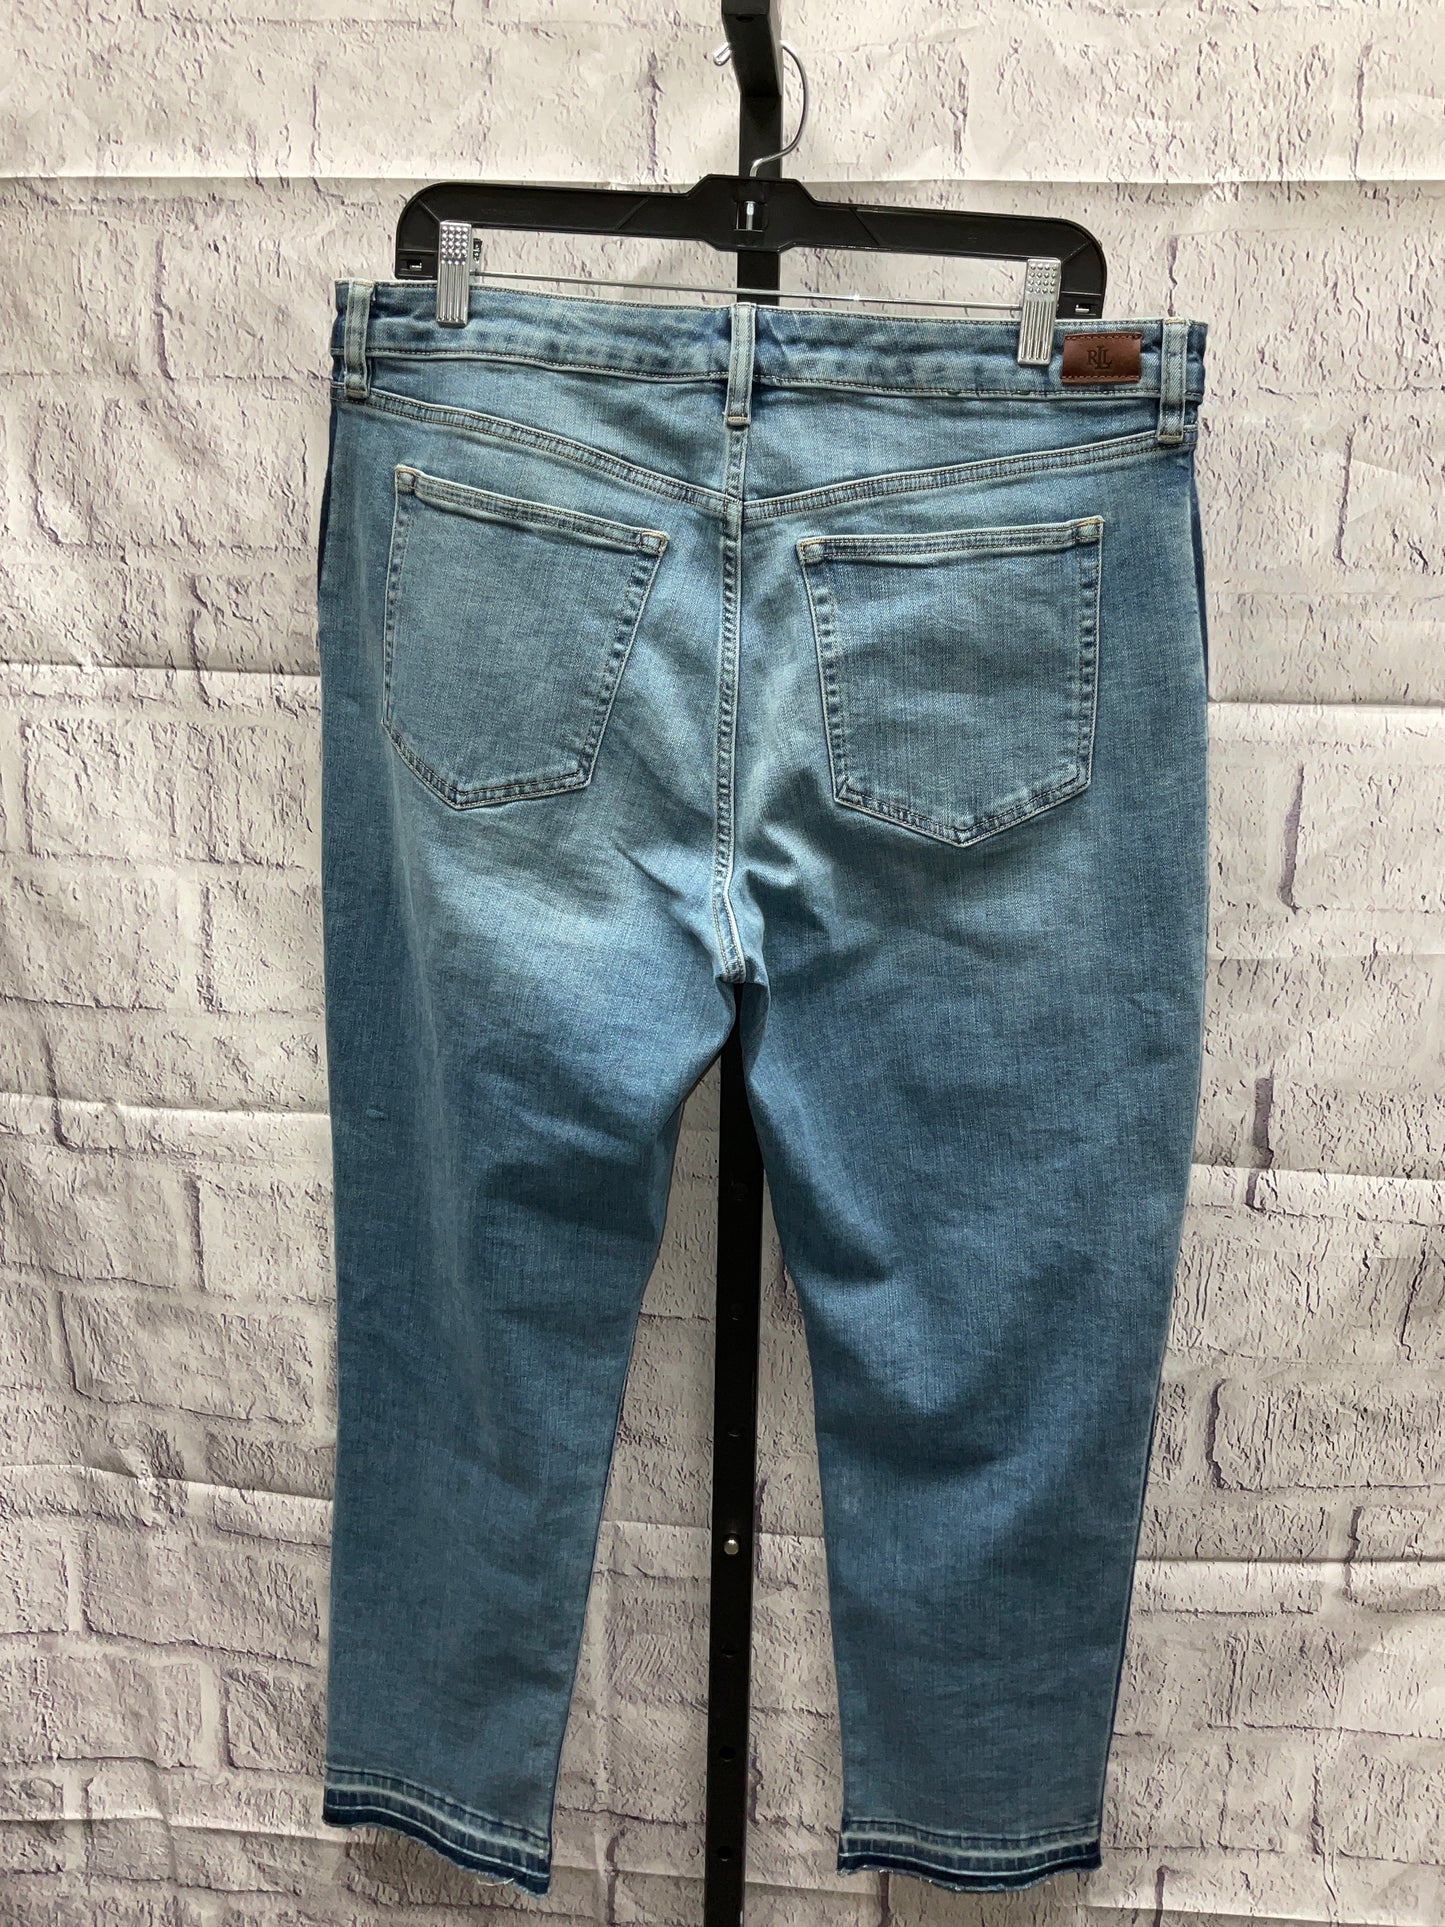 Jeans Designer By Lauren By Ralph Lauren  Size: 16